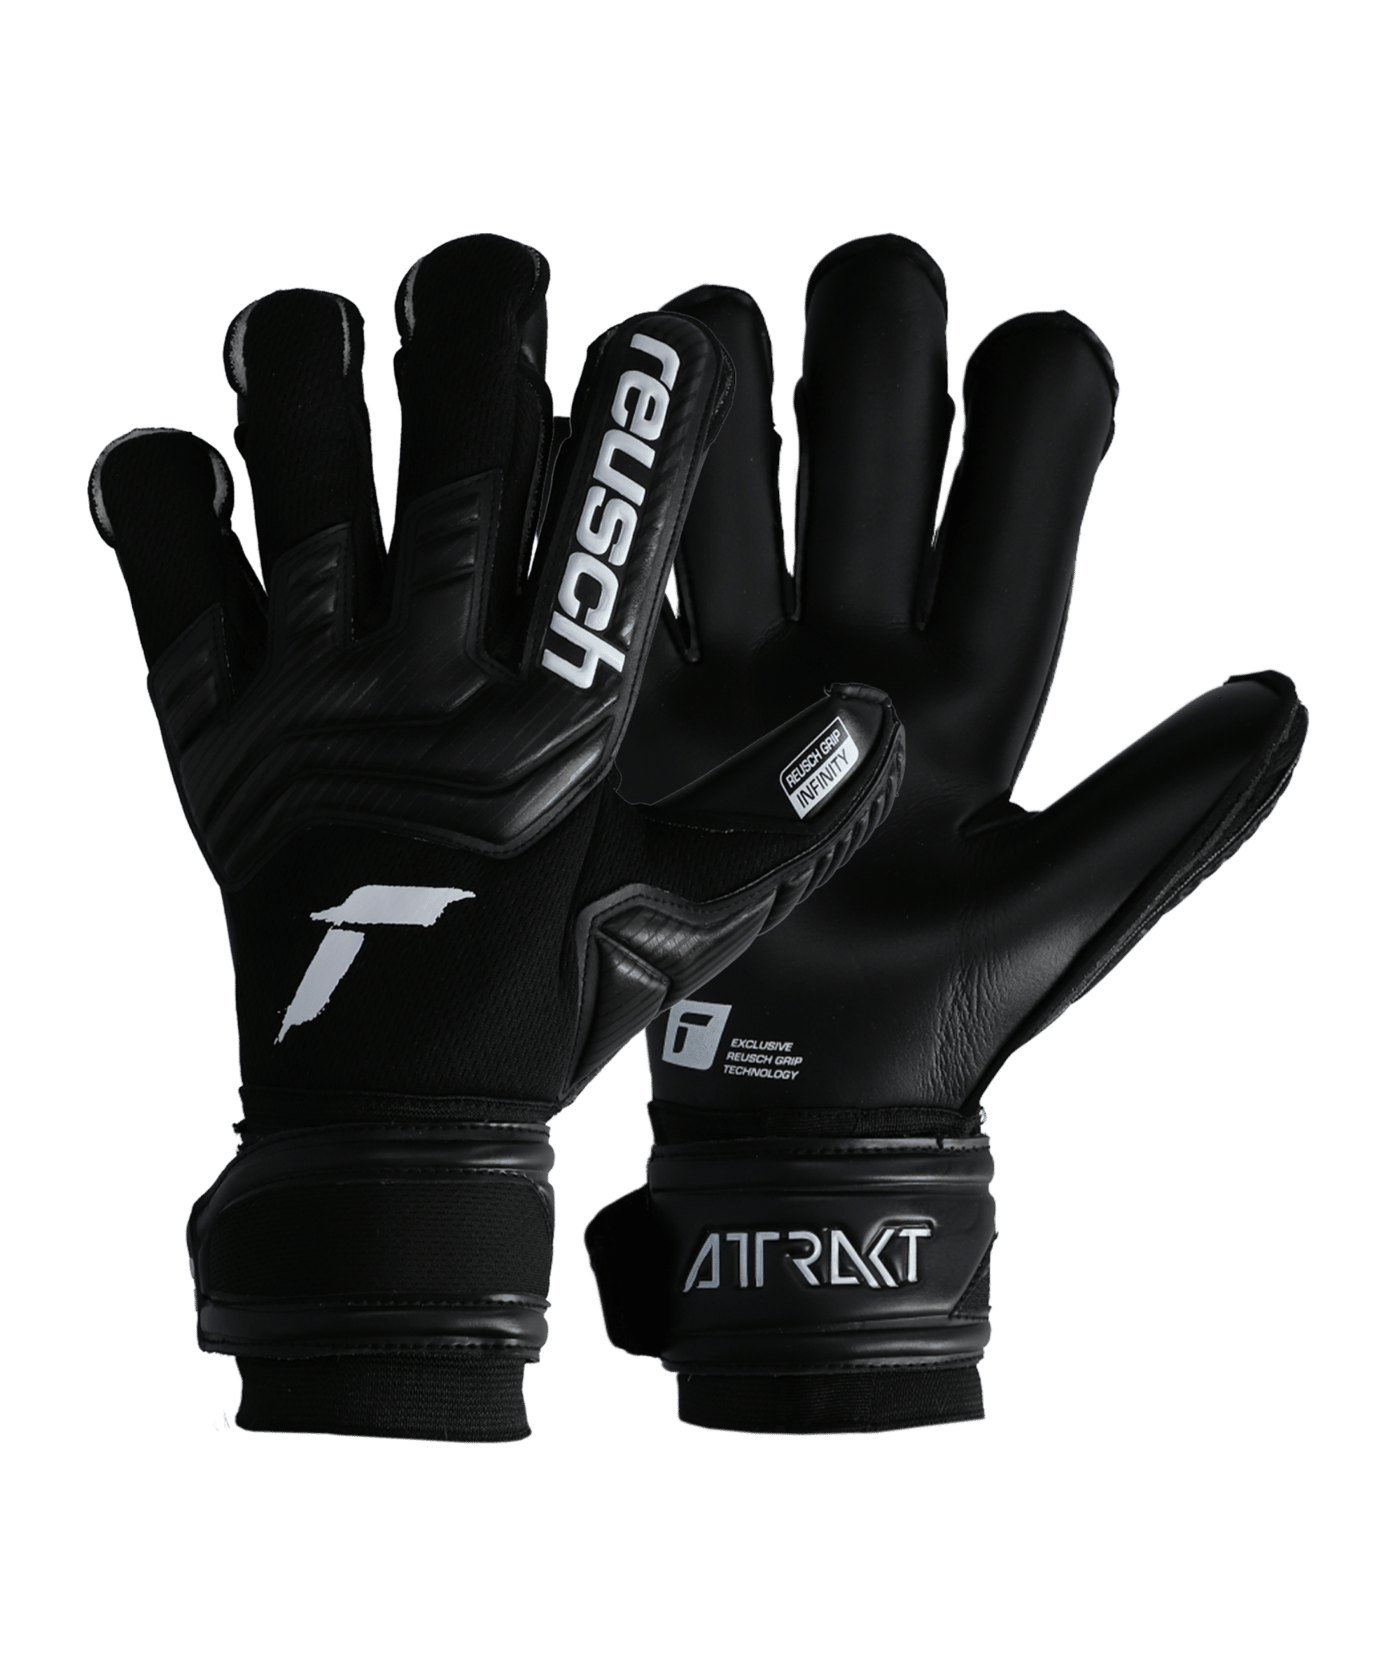 Reusch Attrakt Infinity Alpha TW-Handschuhe Blackout Schwarz Weiss F7701